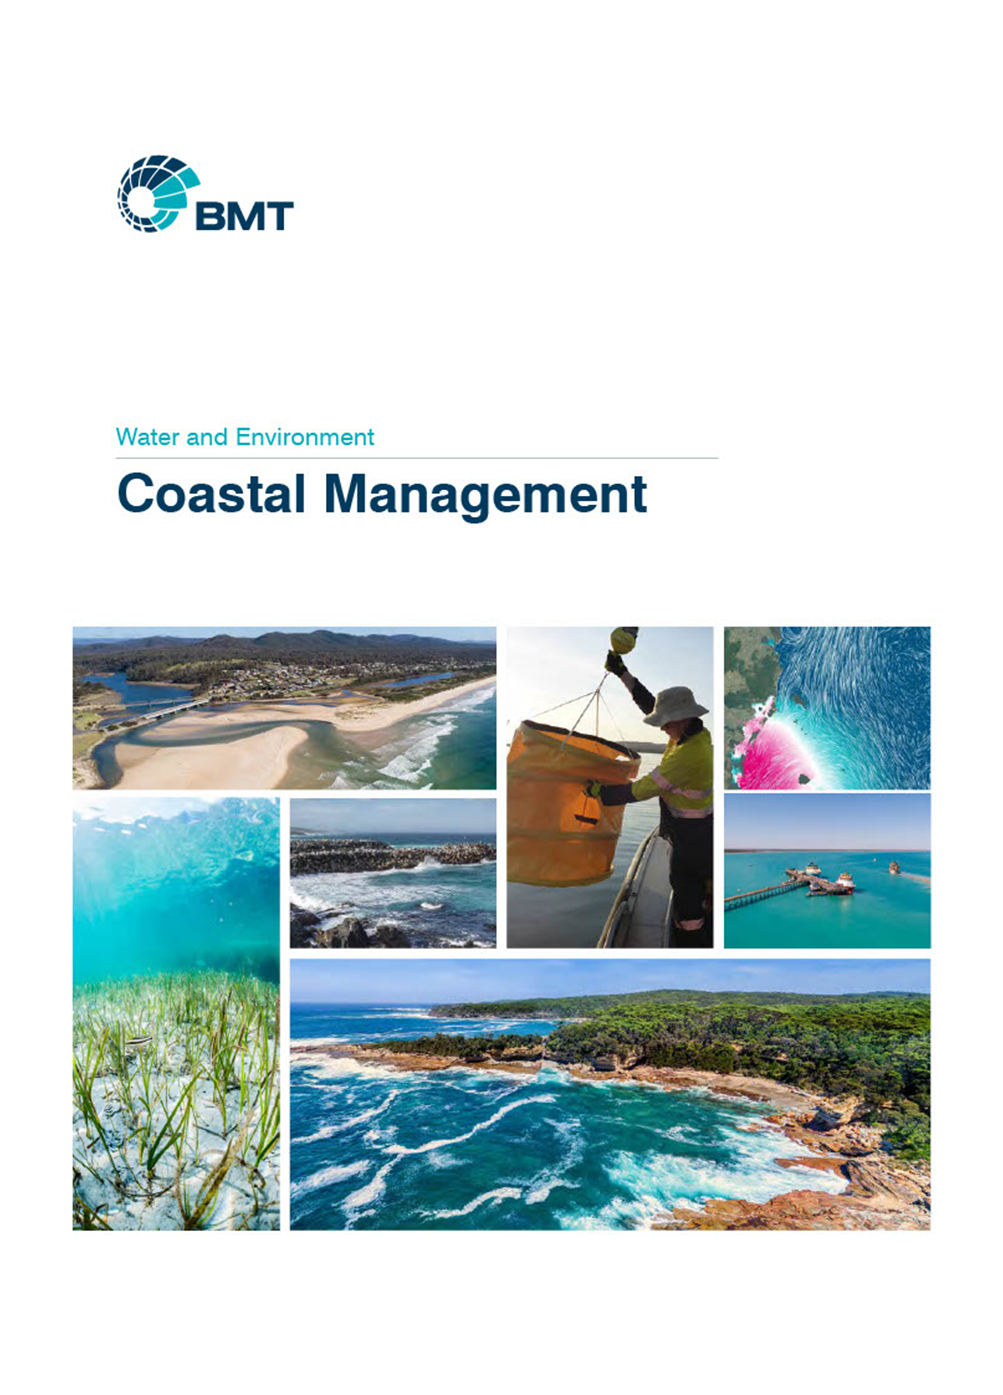 BMT's coastal management services